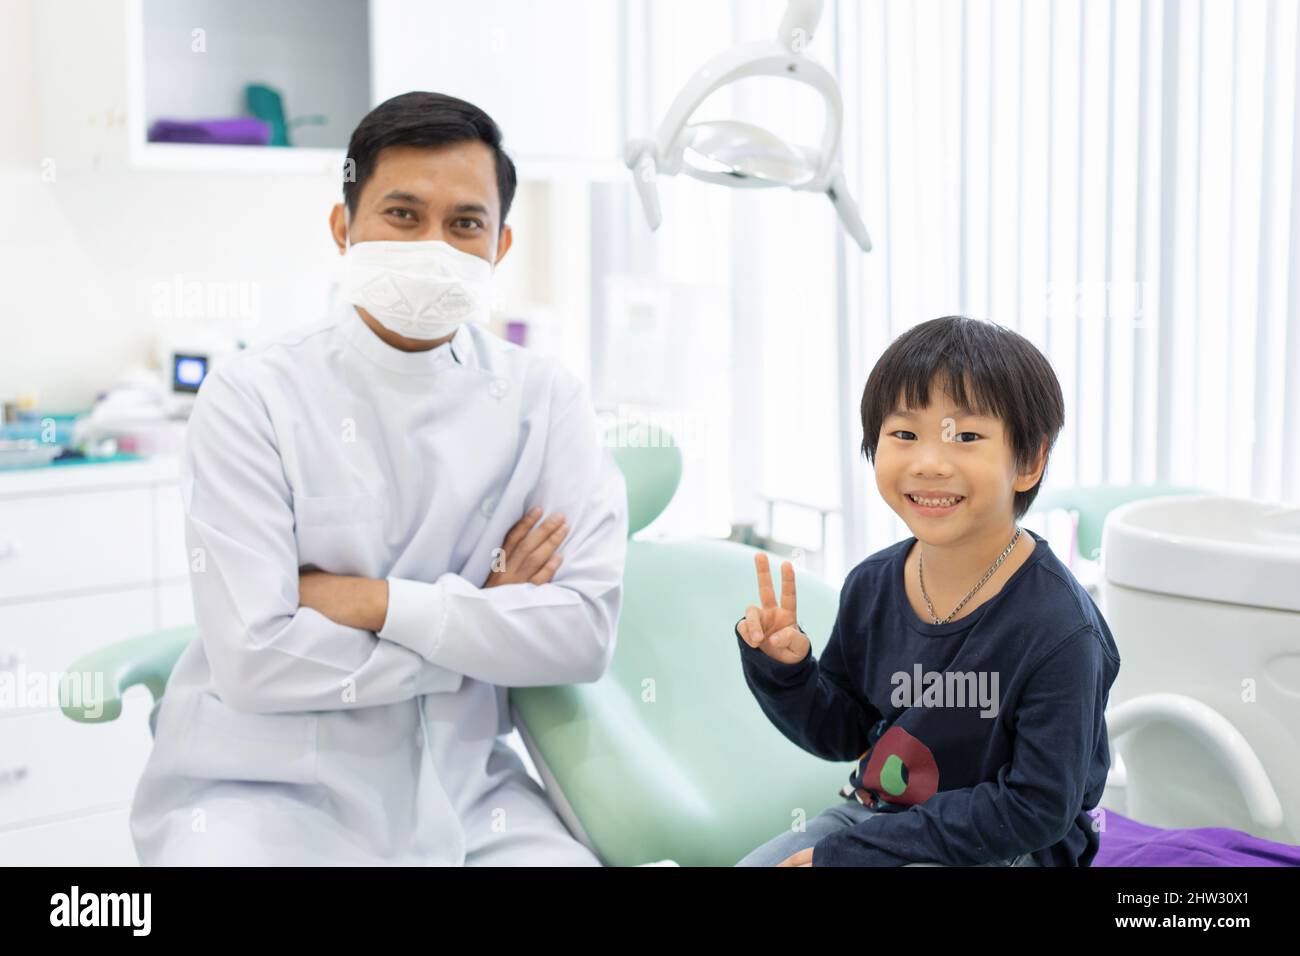 Le garçon asiatique se sent heureux de s'asseoir sur la chaise dentaire avec le dentiste en clinique dentaire Banque D'Images